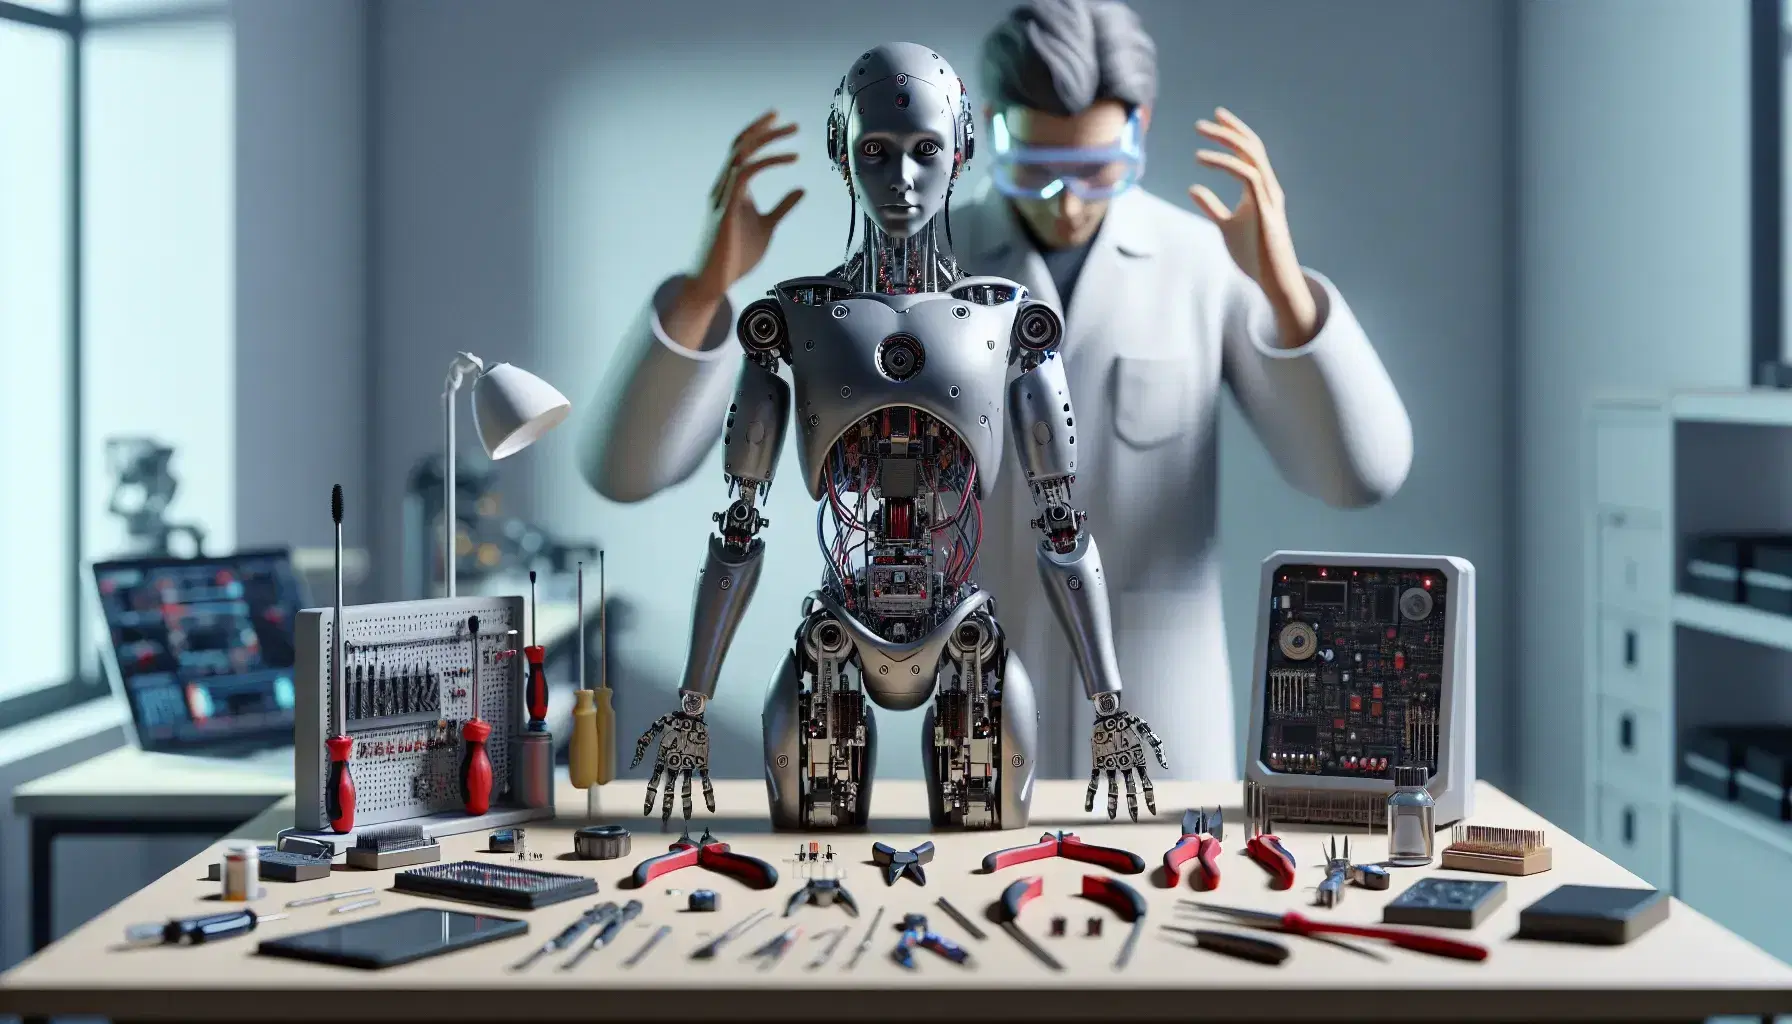 Robot humanoide en laboratorio de robótica con técnico manipulando control remoto, mesa de trabajo con herramientas y componentes electrónicos.